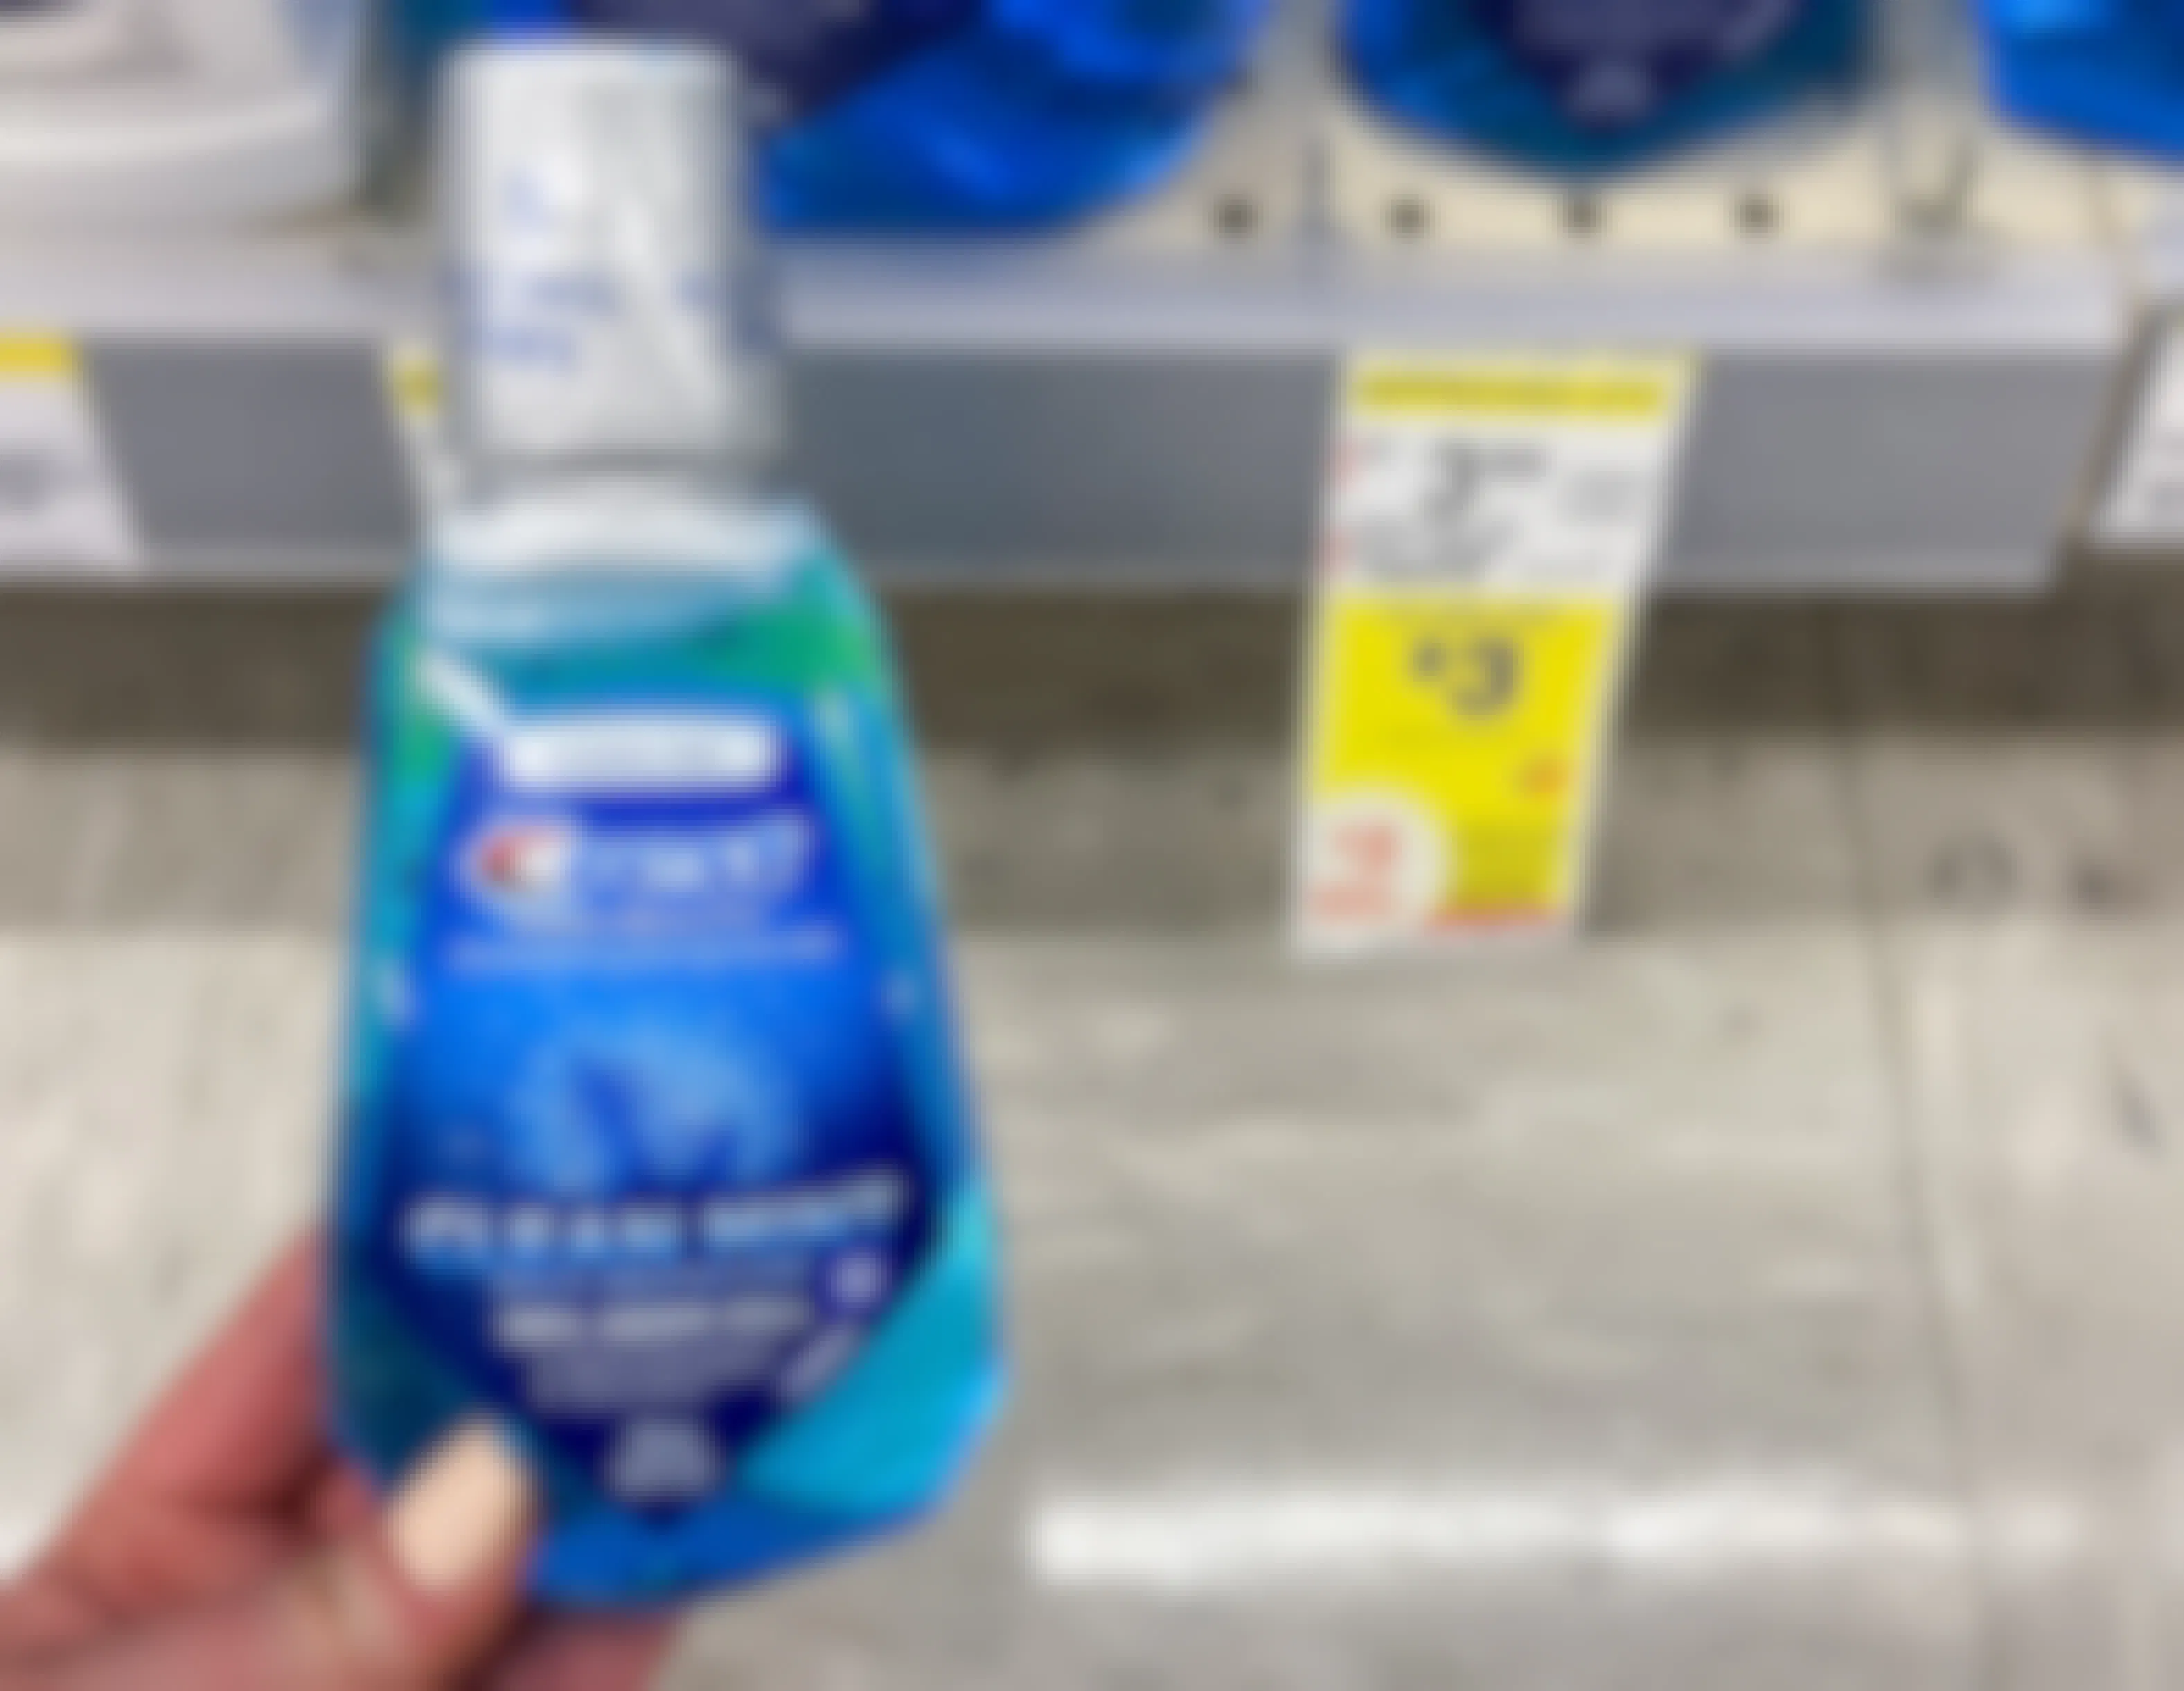 crest mouthwash bottle by walgreens sale tag